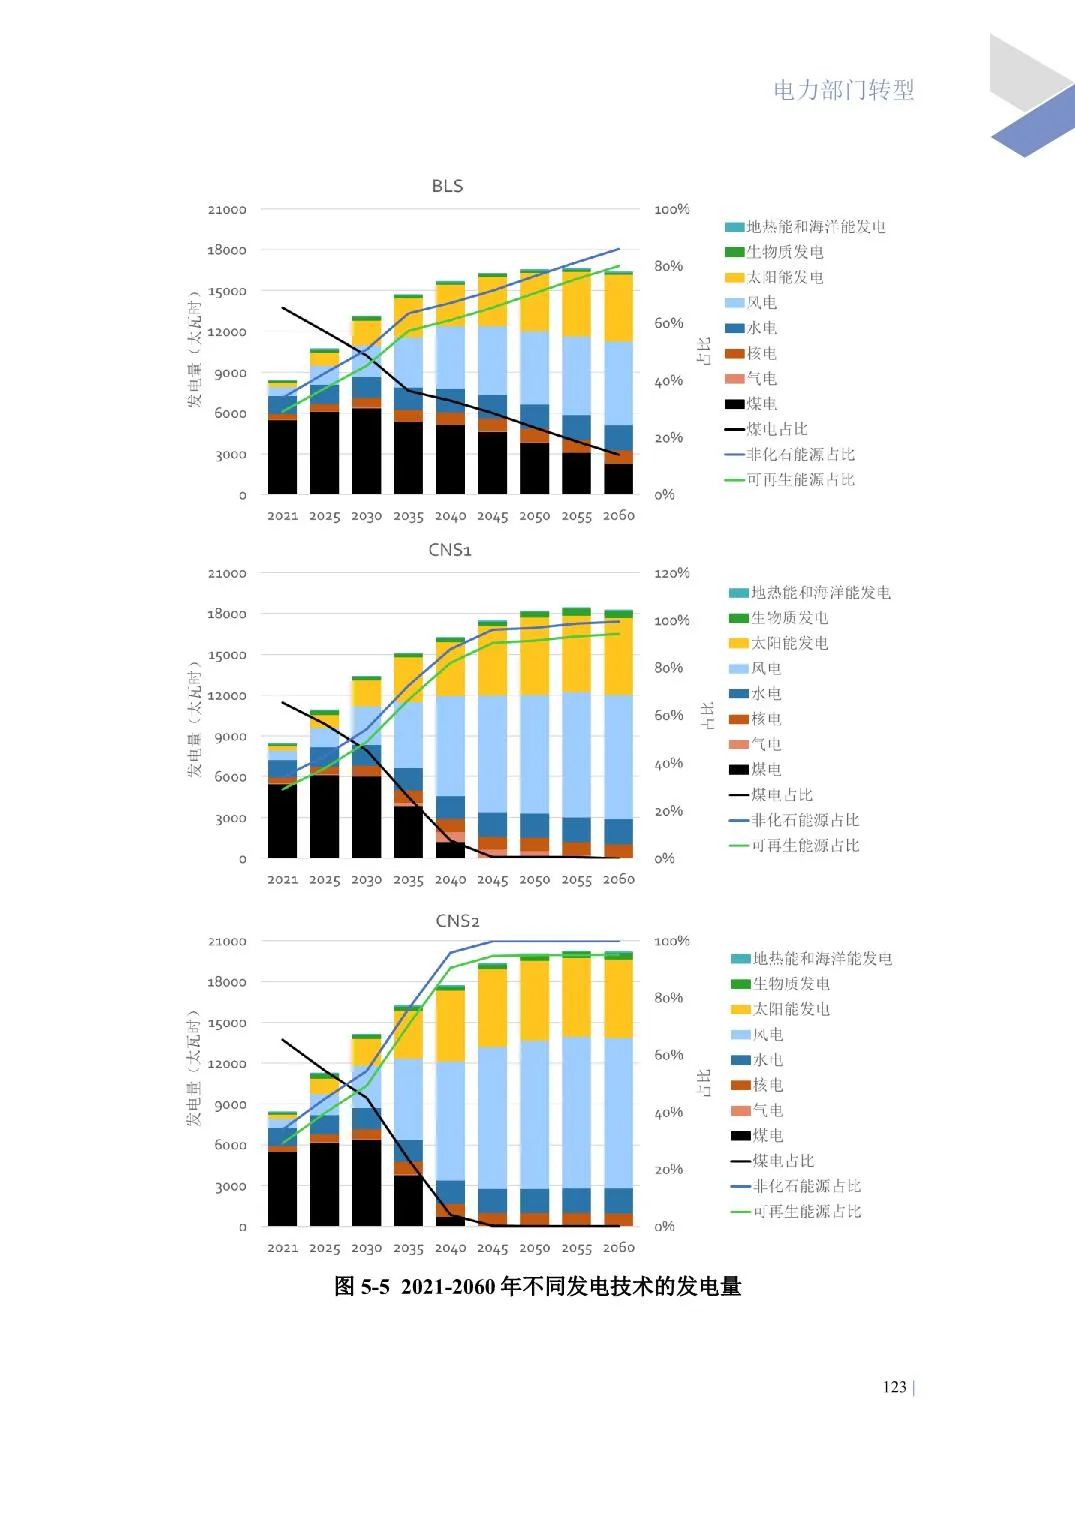 中国能源转型展望2023